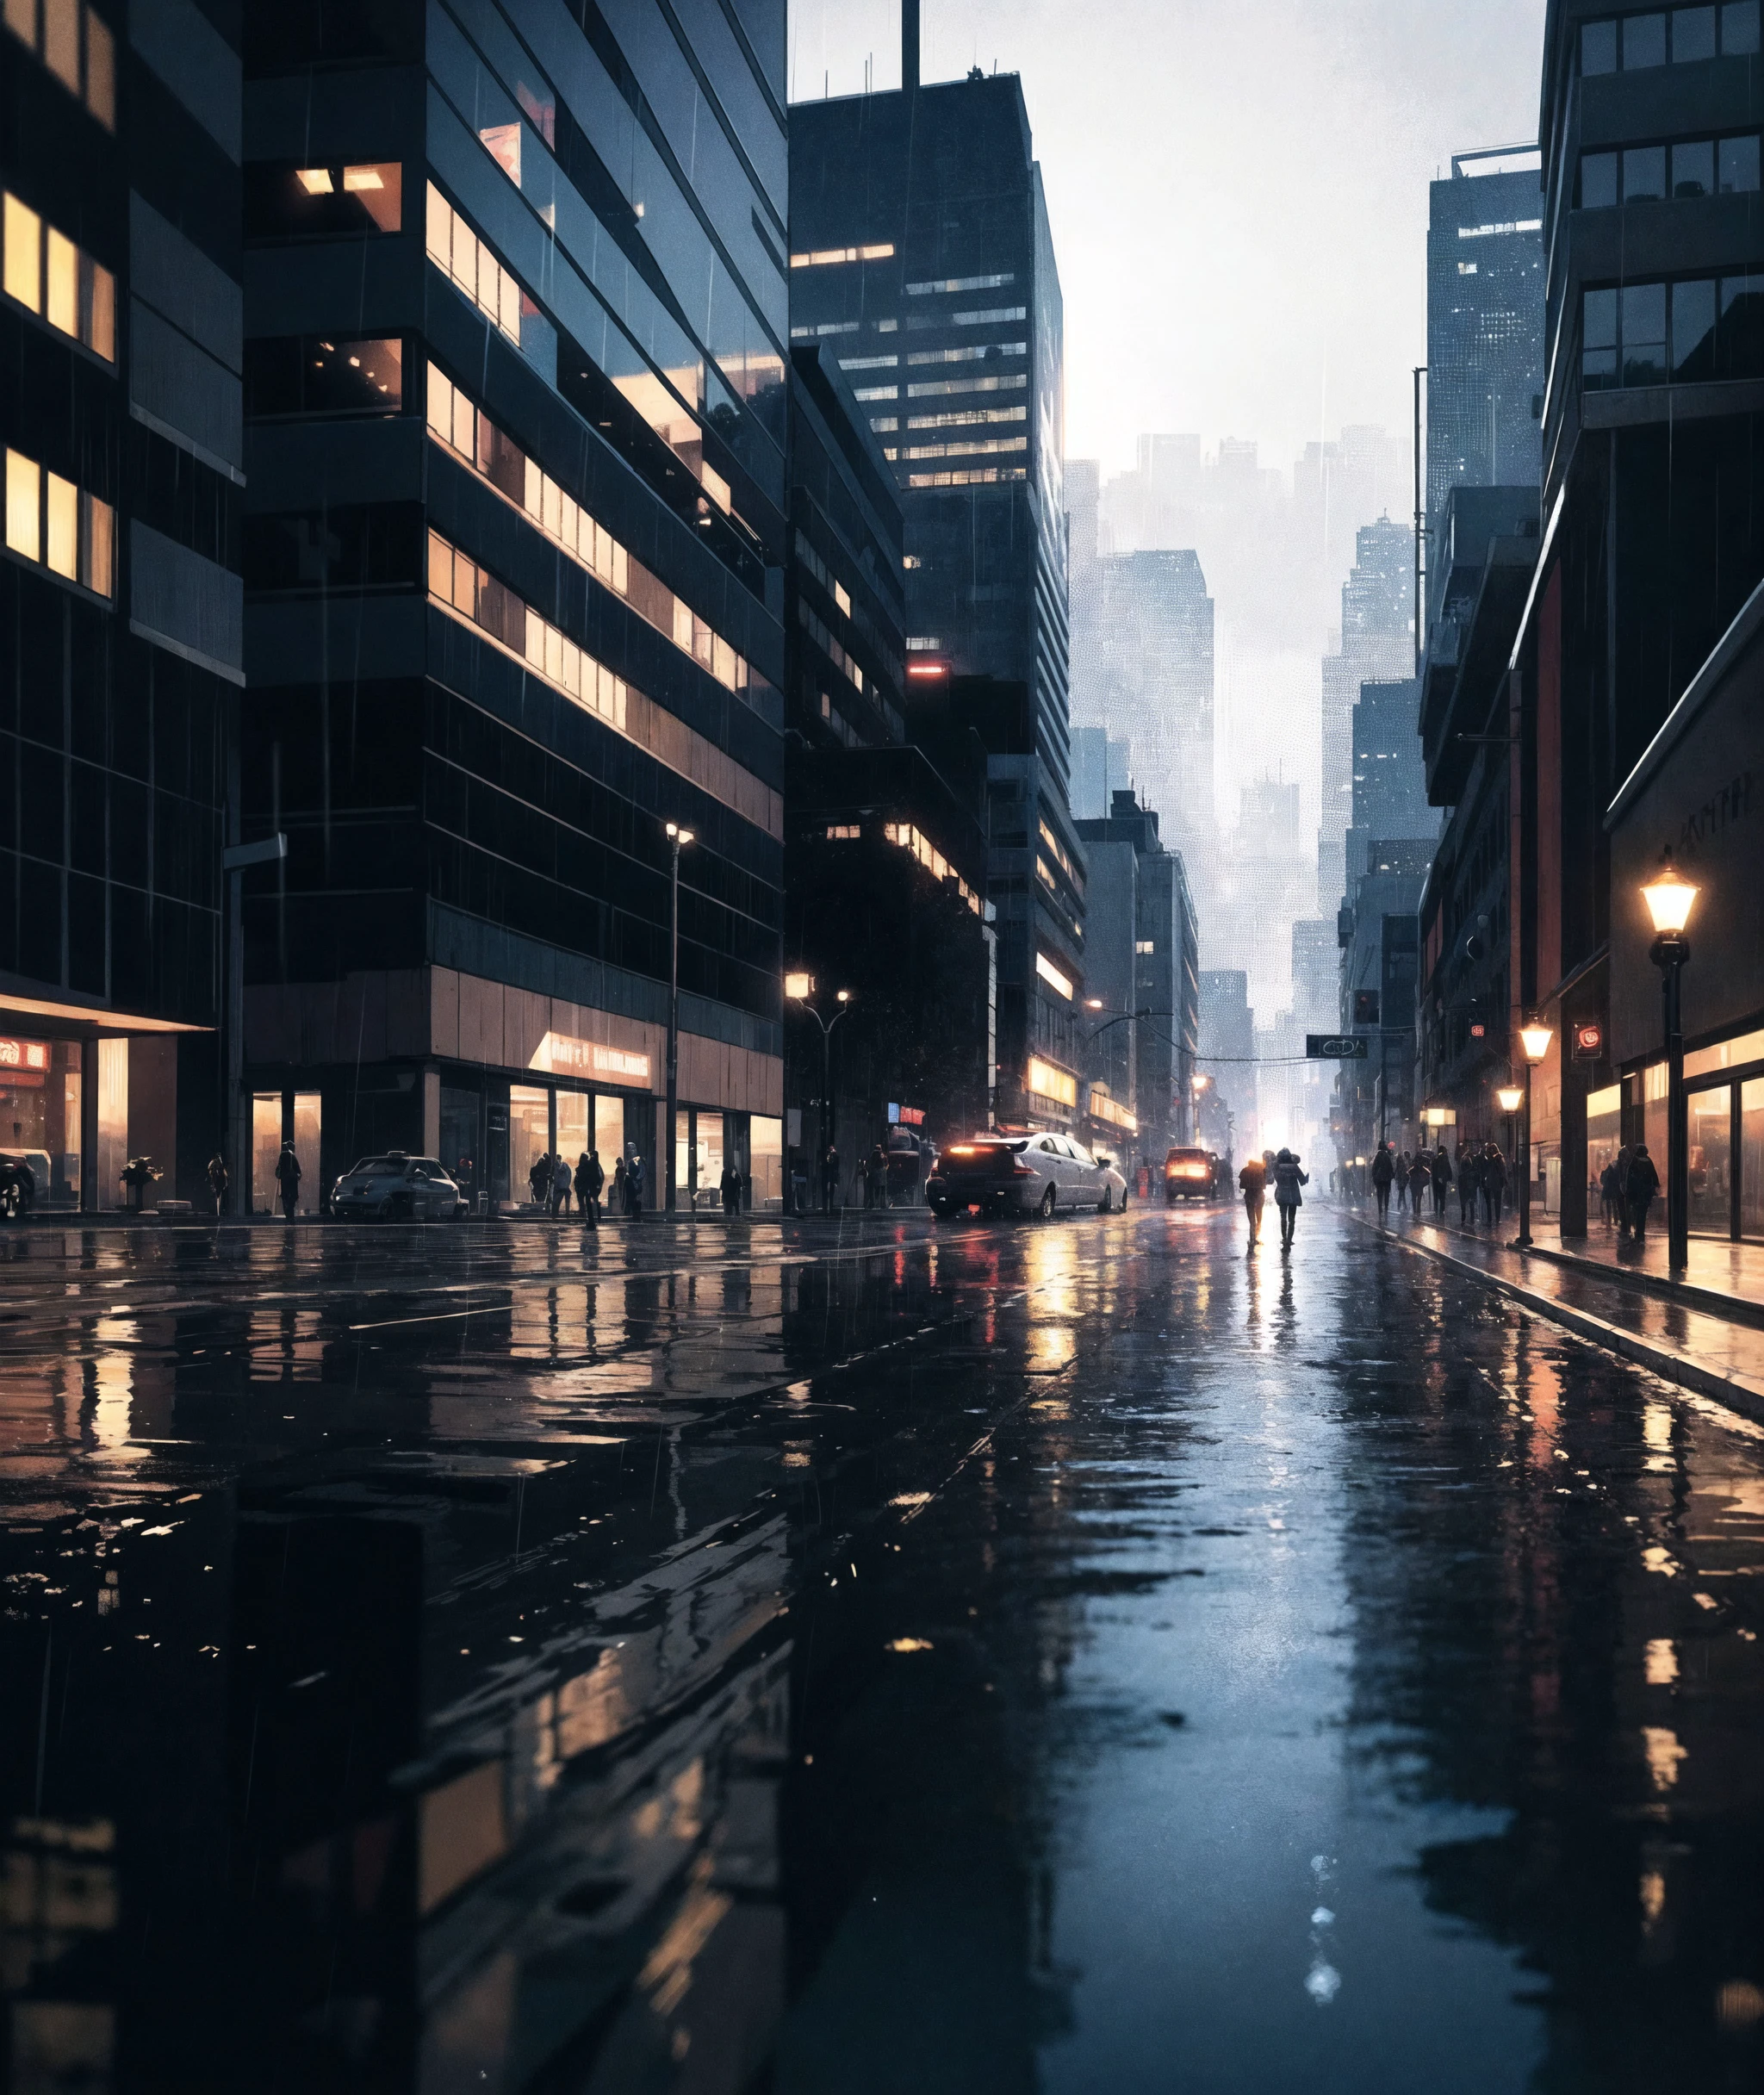 gRegeny, extrem detailliert,dynamische Beleuchtung, dunkel, Regen, Reflexion auf dem Wasser, futuristische Stadt